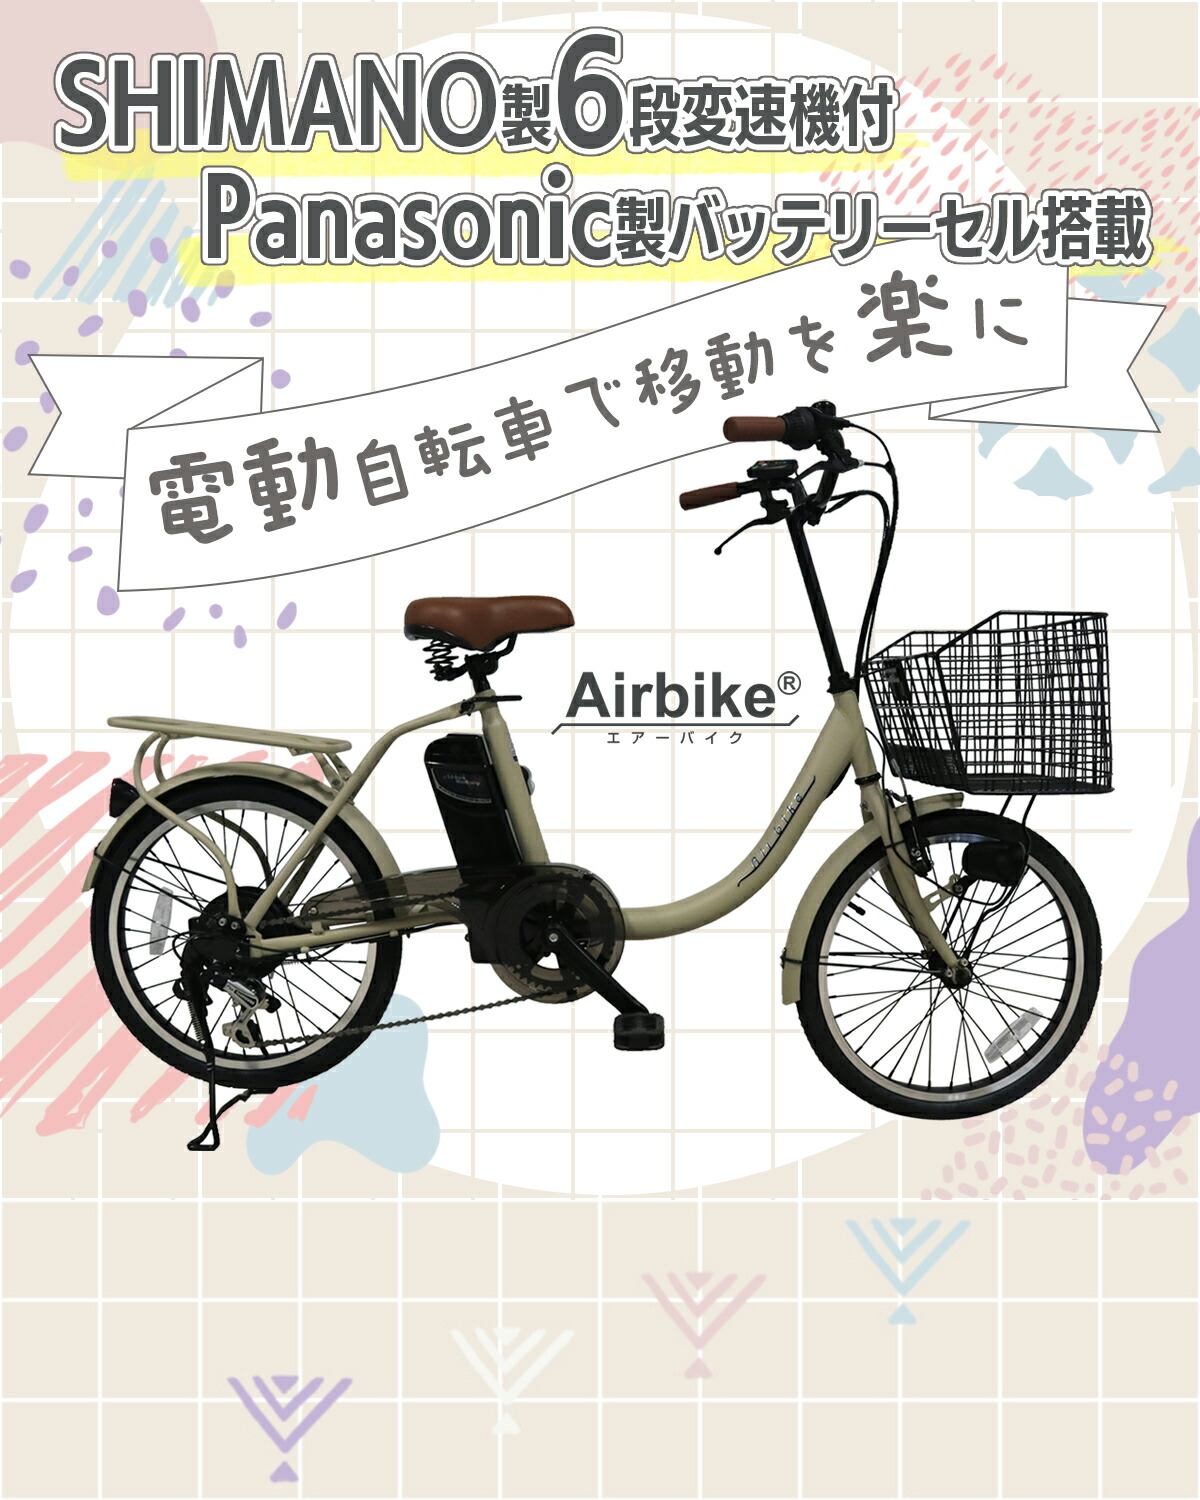 【今だけ先着30台特別価格】電動自転車 パナソニック Panasonic バッテリーセル搭載 20インチ 型式認定 Airbike  bicycle-212assist 電動アシスト自転車